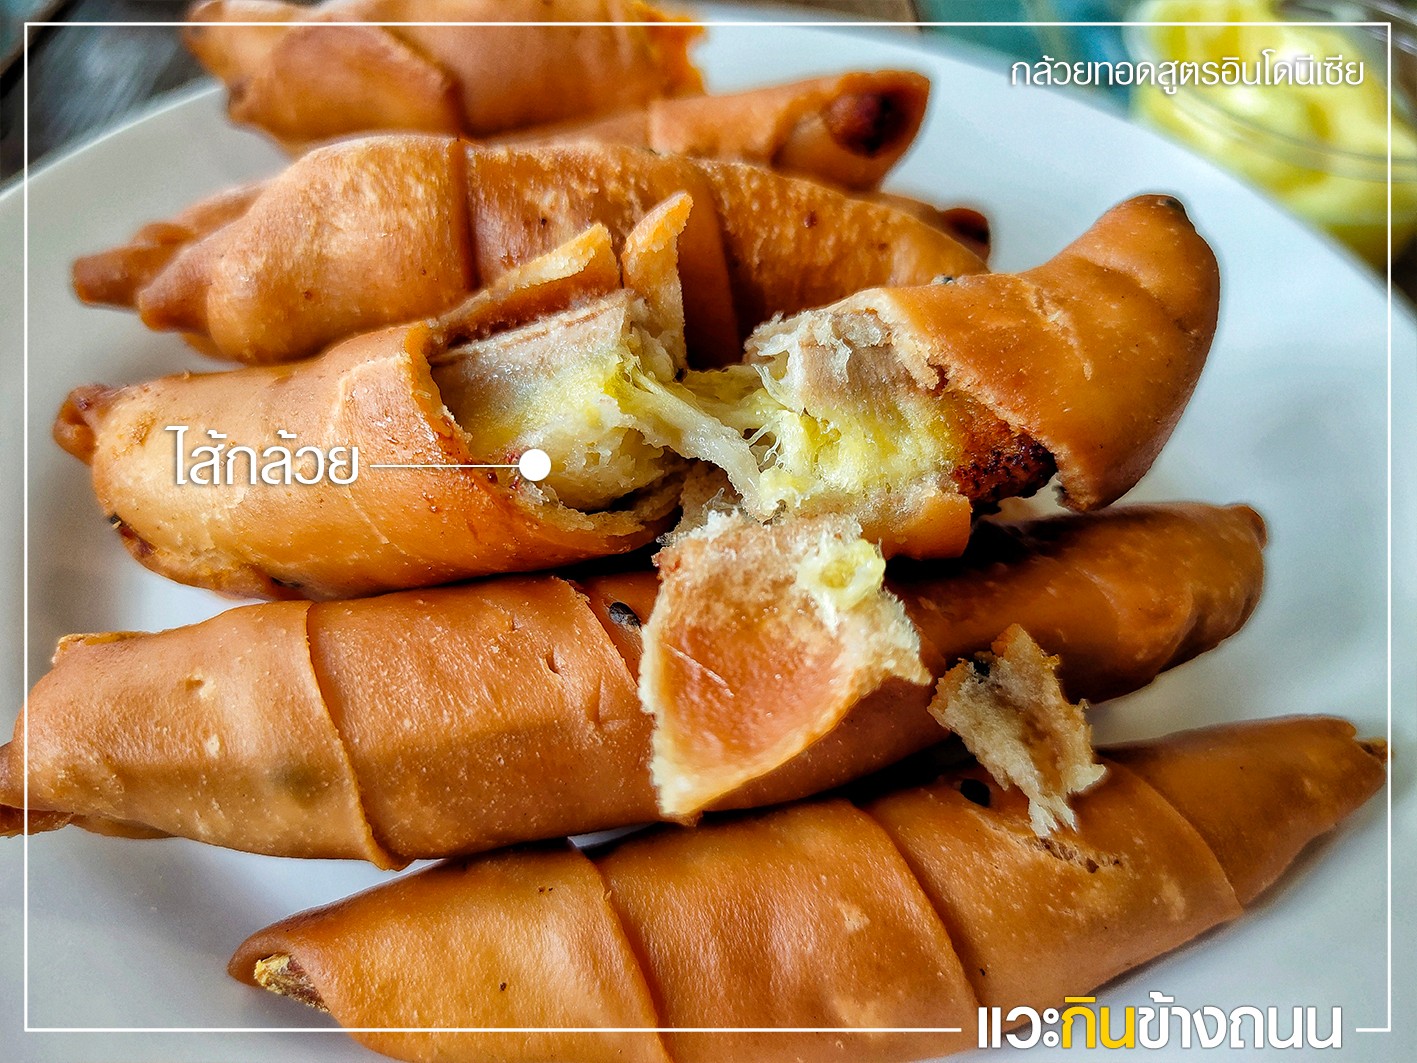 แวะกินข้างถนน รีวิว ขนมโมเลน กล้วยทอด สาขาสนามบินน้ำ จ.นนทบุรี - Pantip